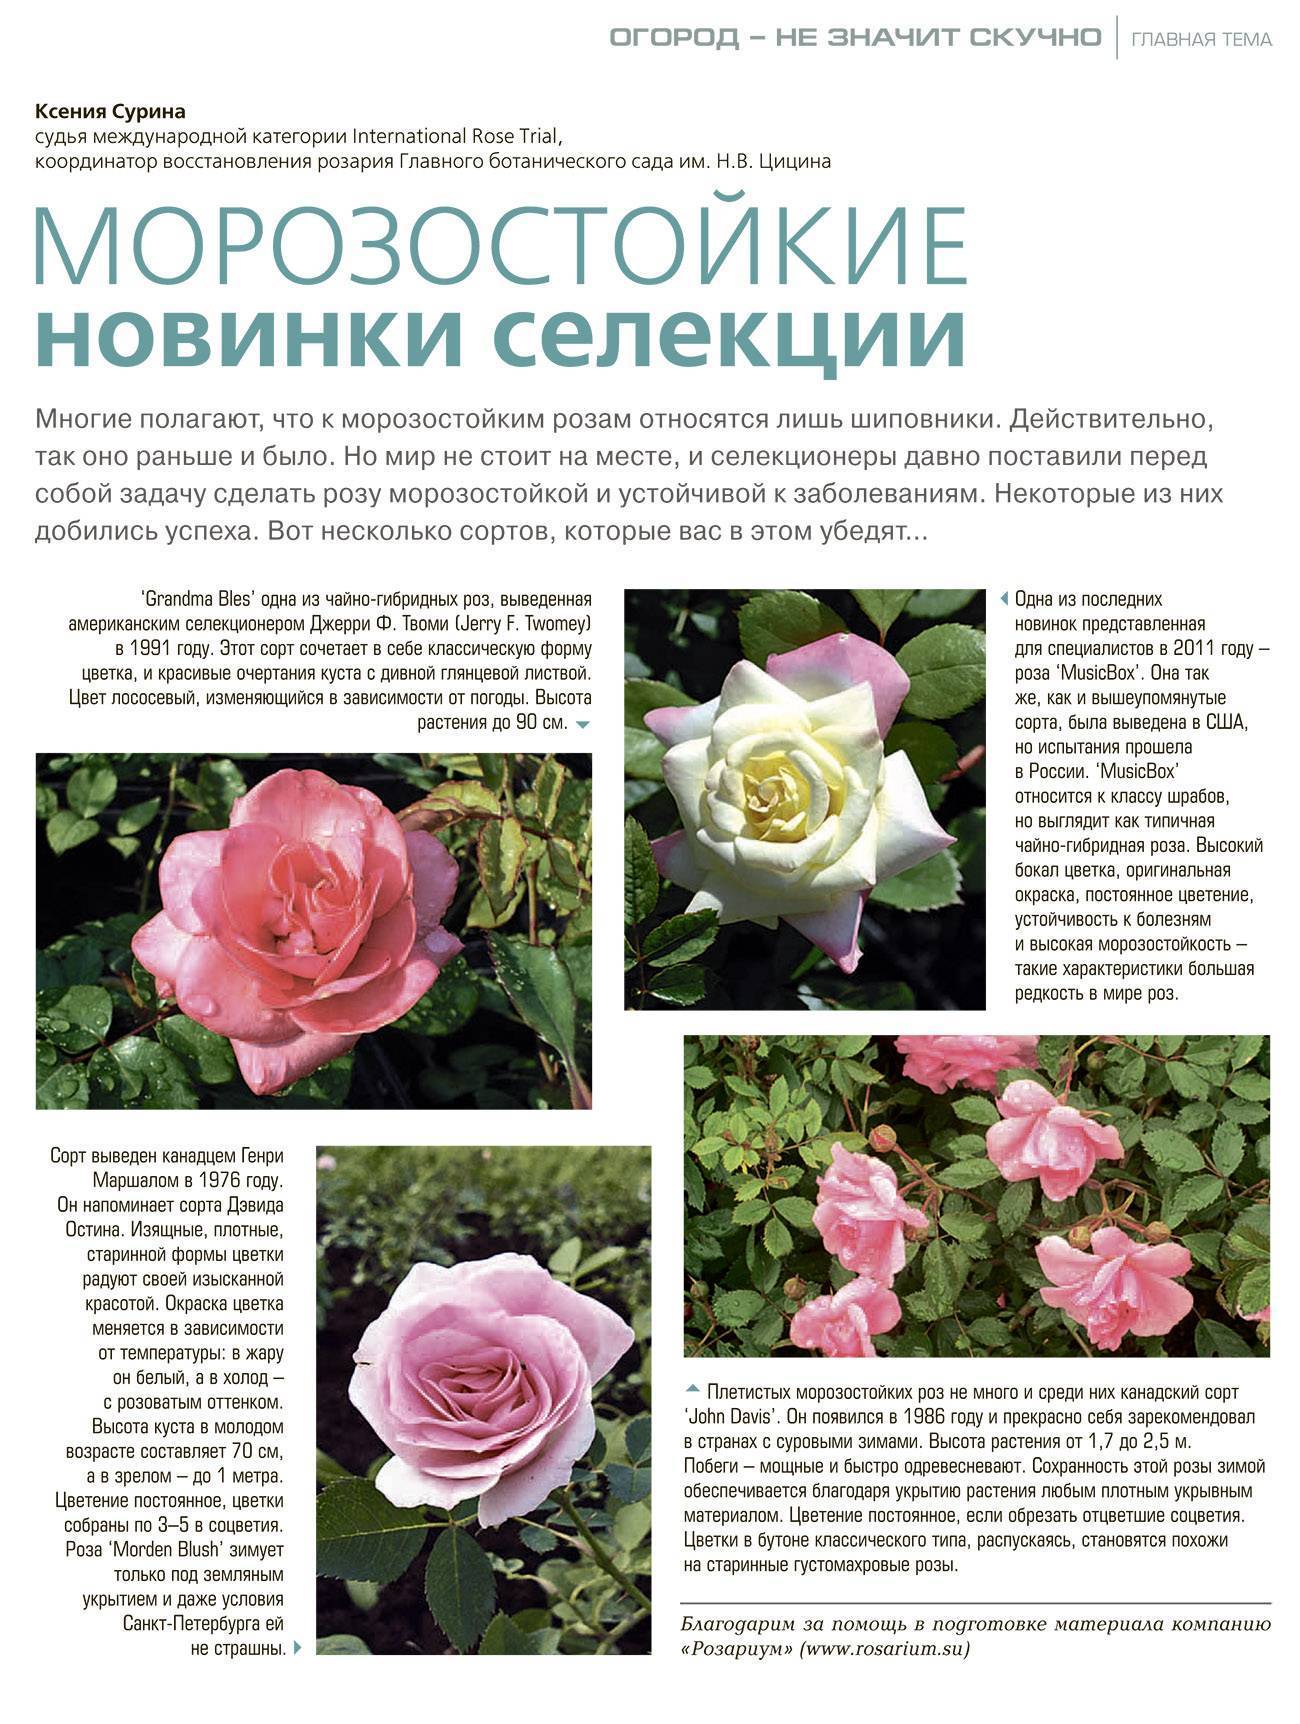 Роза флорентина фото и описание отзывы !